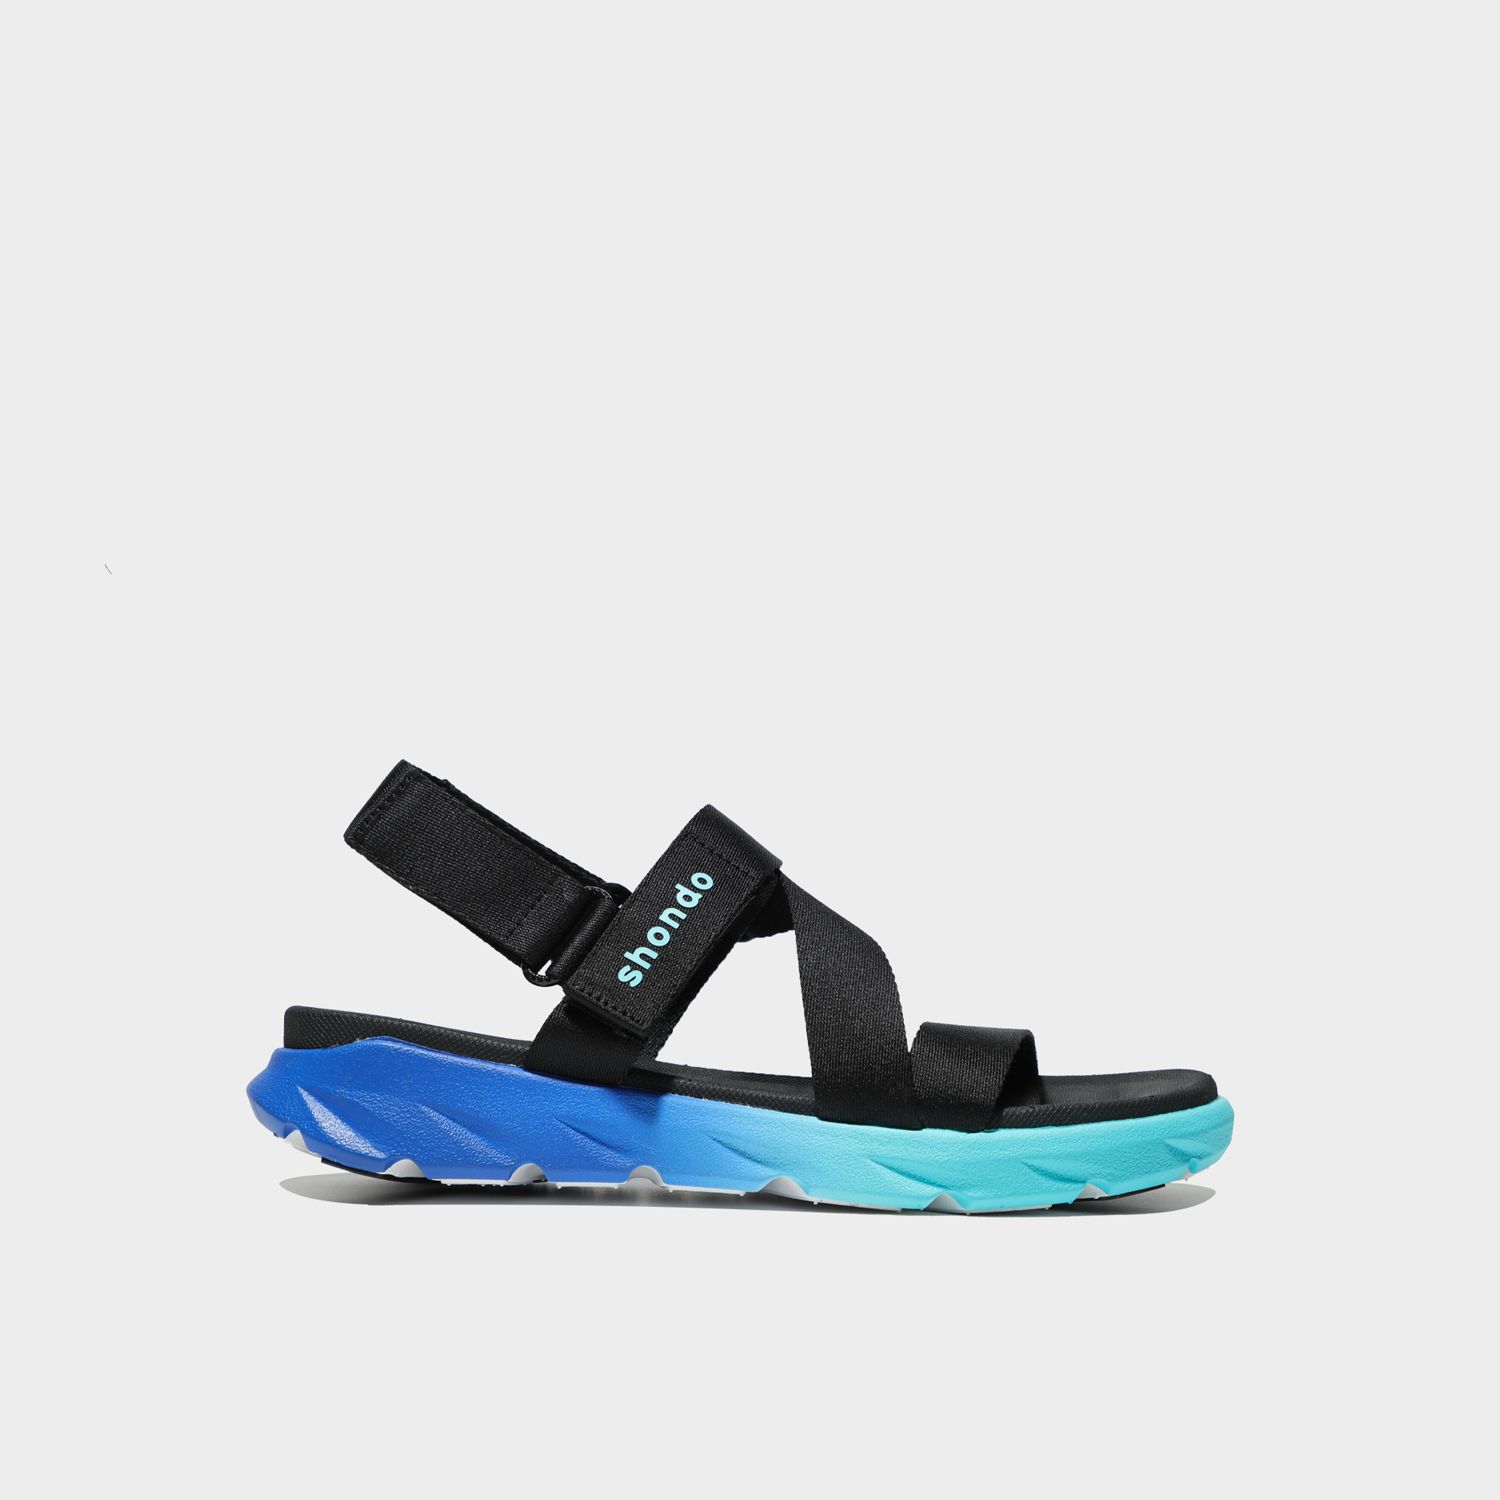 Giày sandal Shondo nam nữ đi học đế bằng ombre đế 2 màu xanh dương xanh nhạt quai đen F6S3310